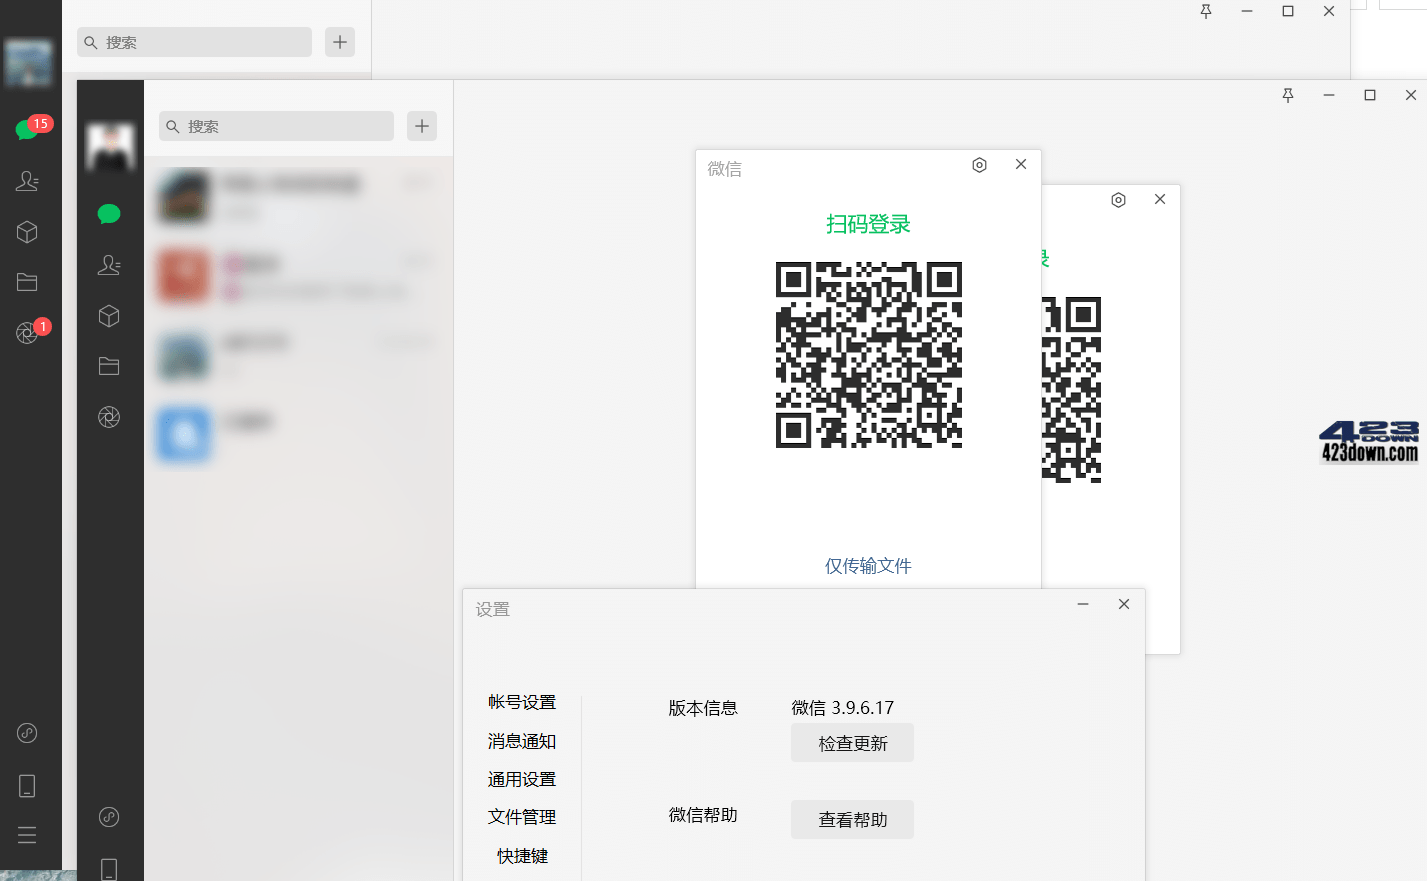 微信PC版WeChat 3.9.9.35 微信正式版官方版